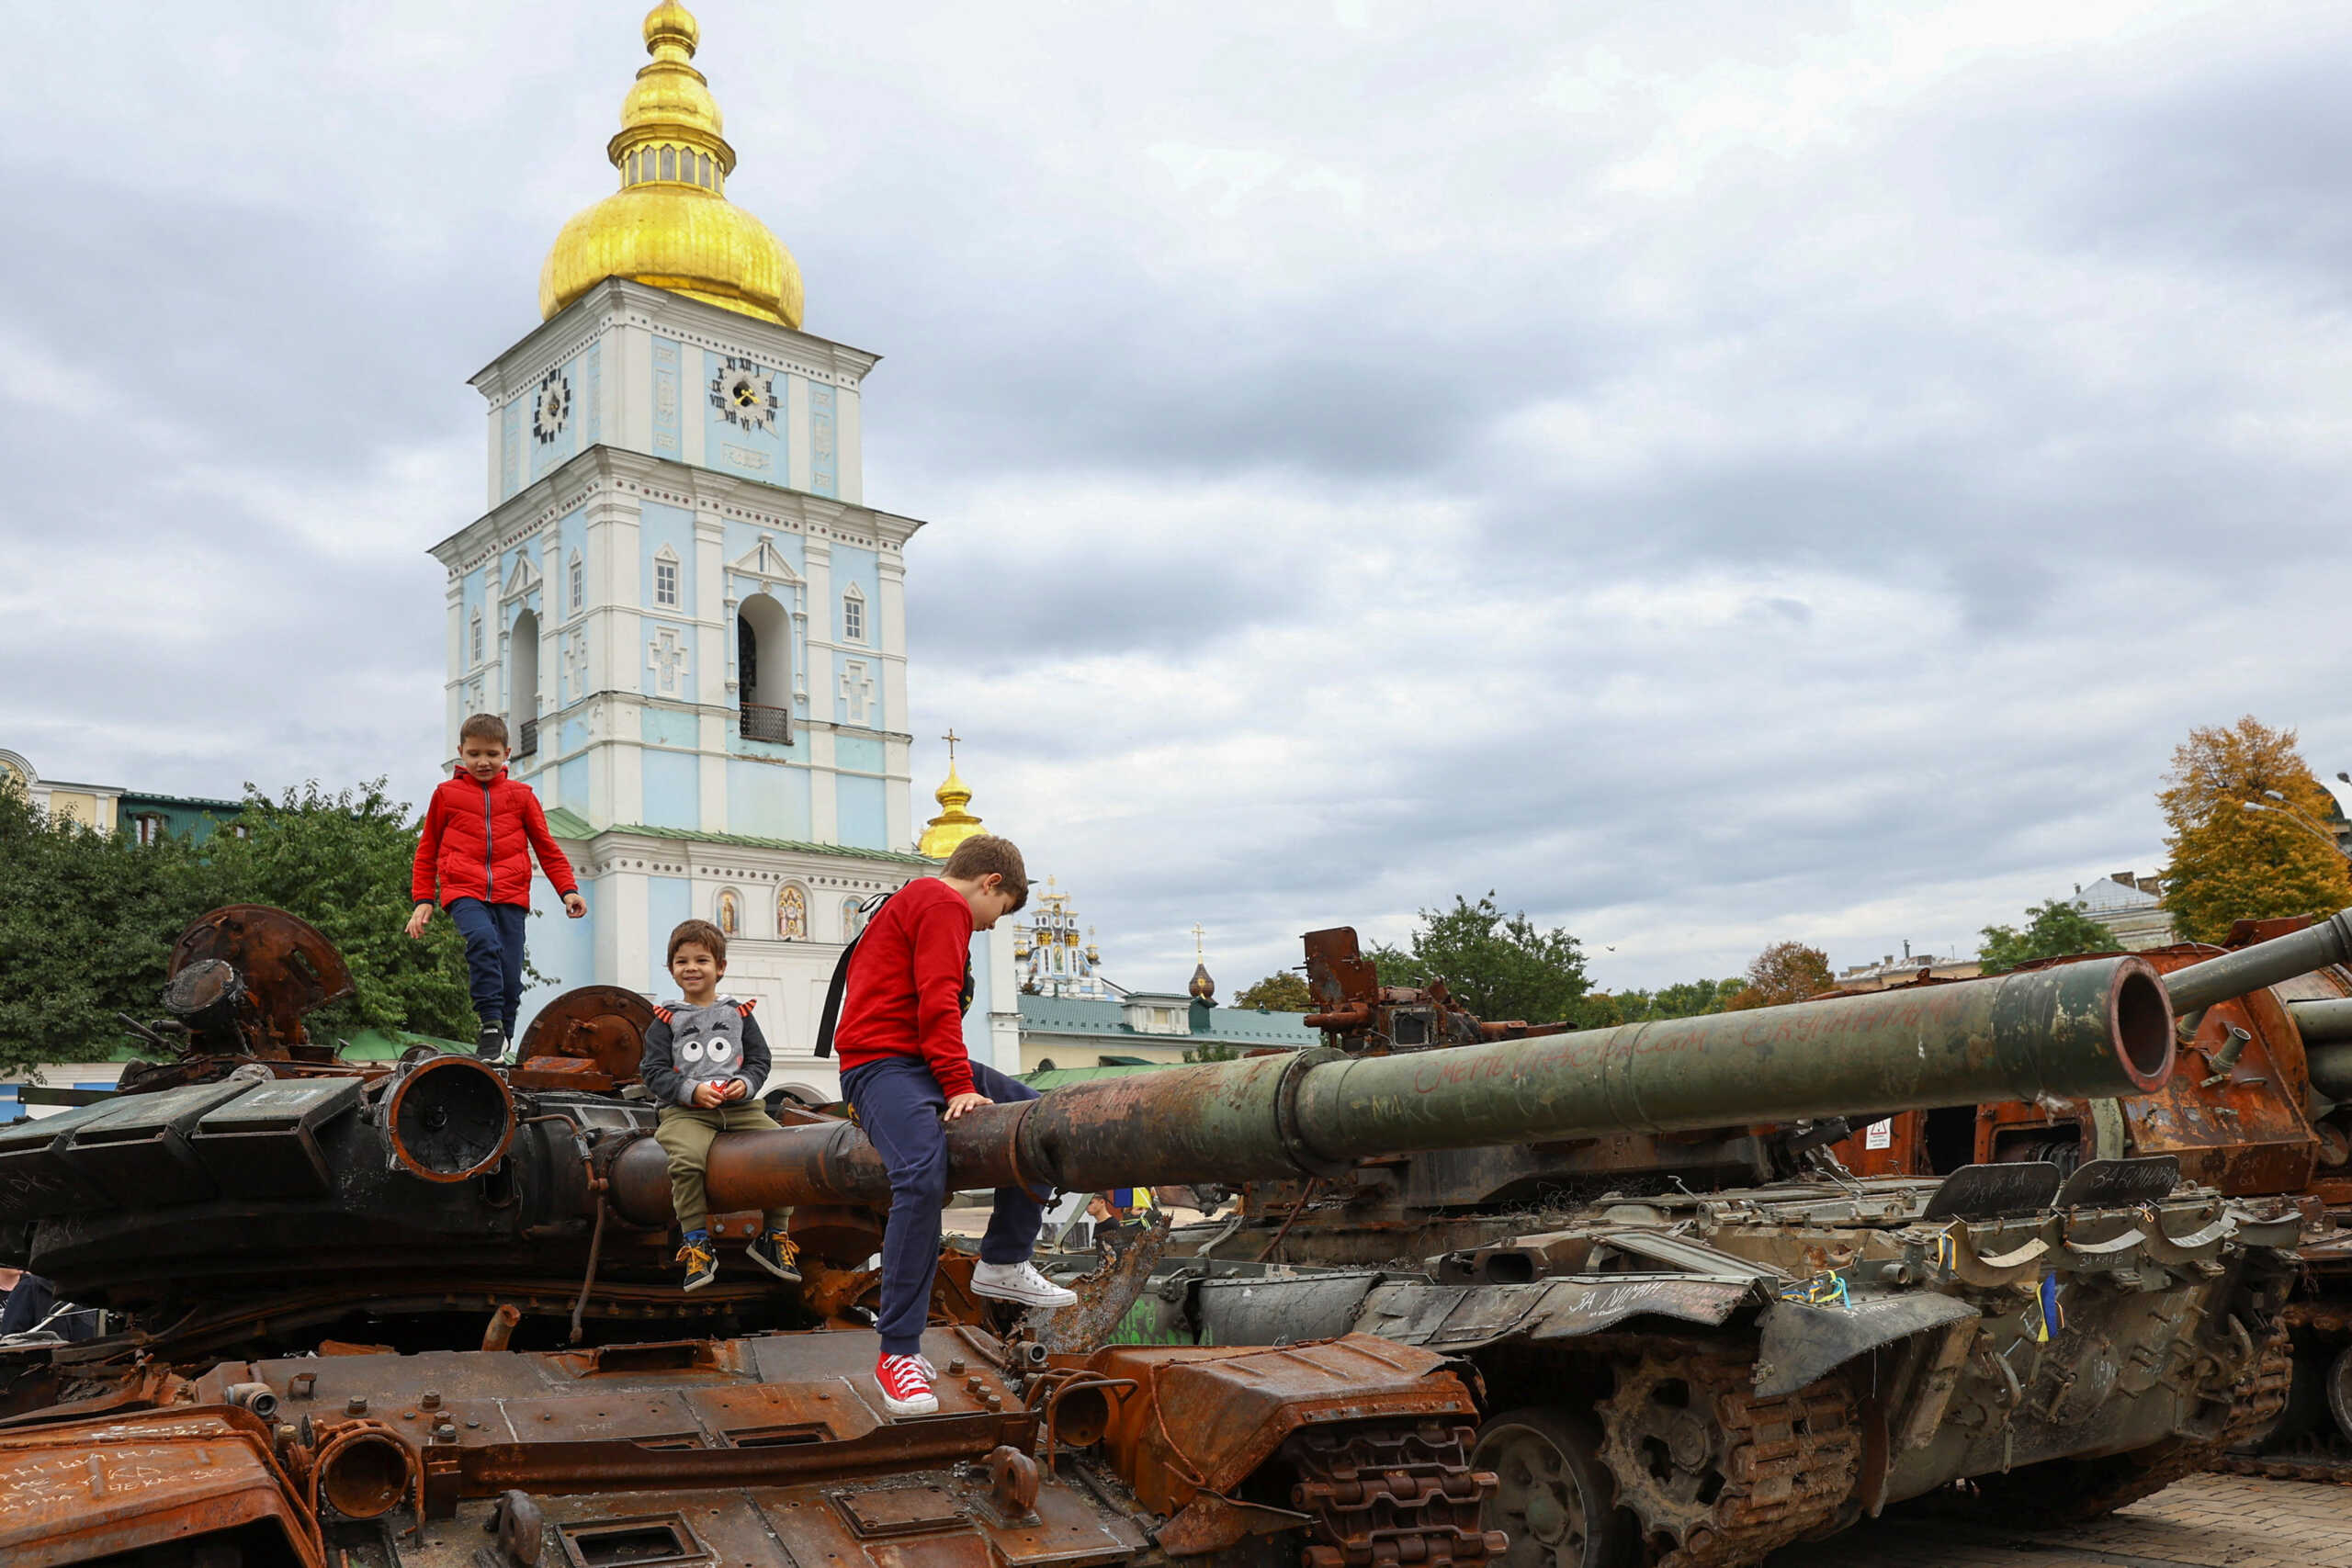 Διευθυντής του Russia Today δήλωσε ότι θα έπνιγε ή θα έκαιγε τα παιδιά στην Ουκρανία